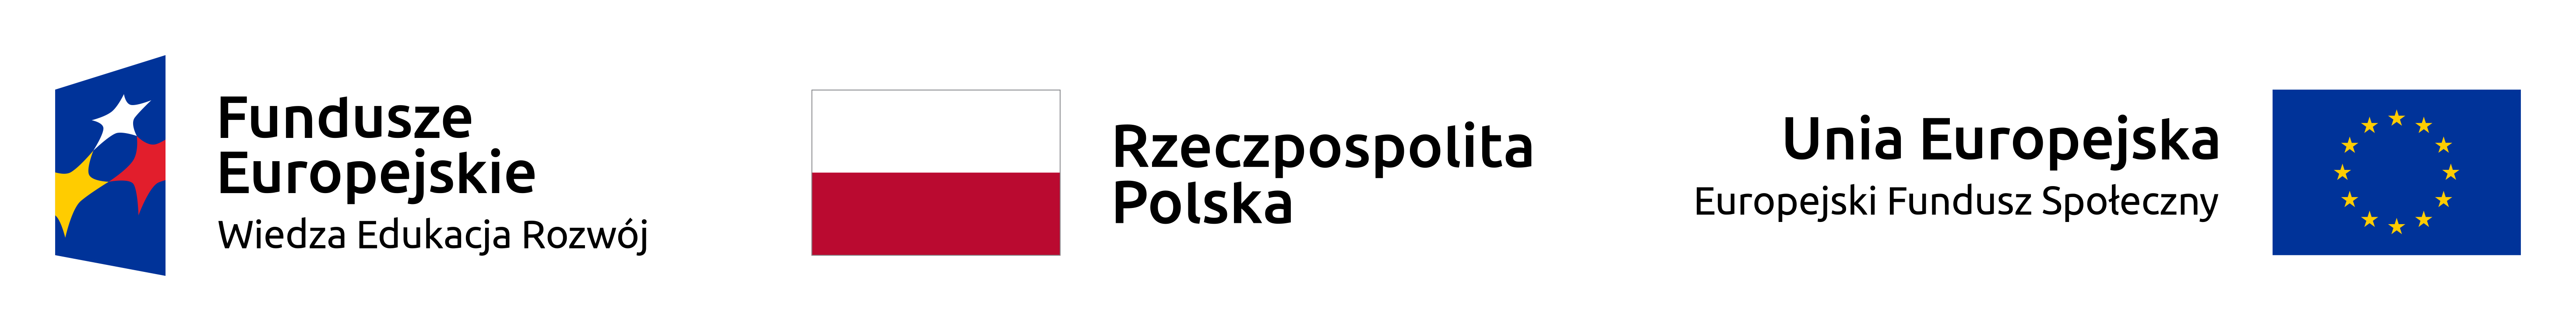 Logo Europejskiego Funduszu Społecznego, Funduszu Europejskiego oraz flaga Polski